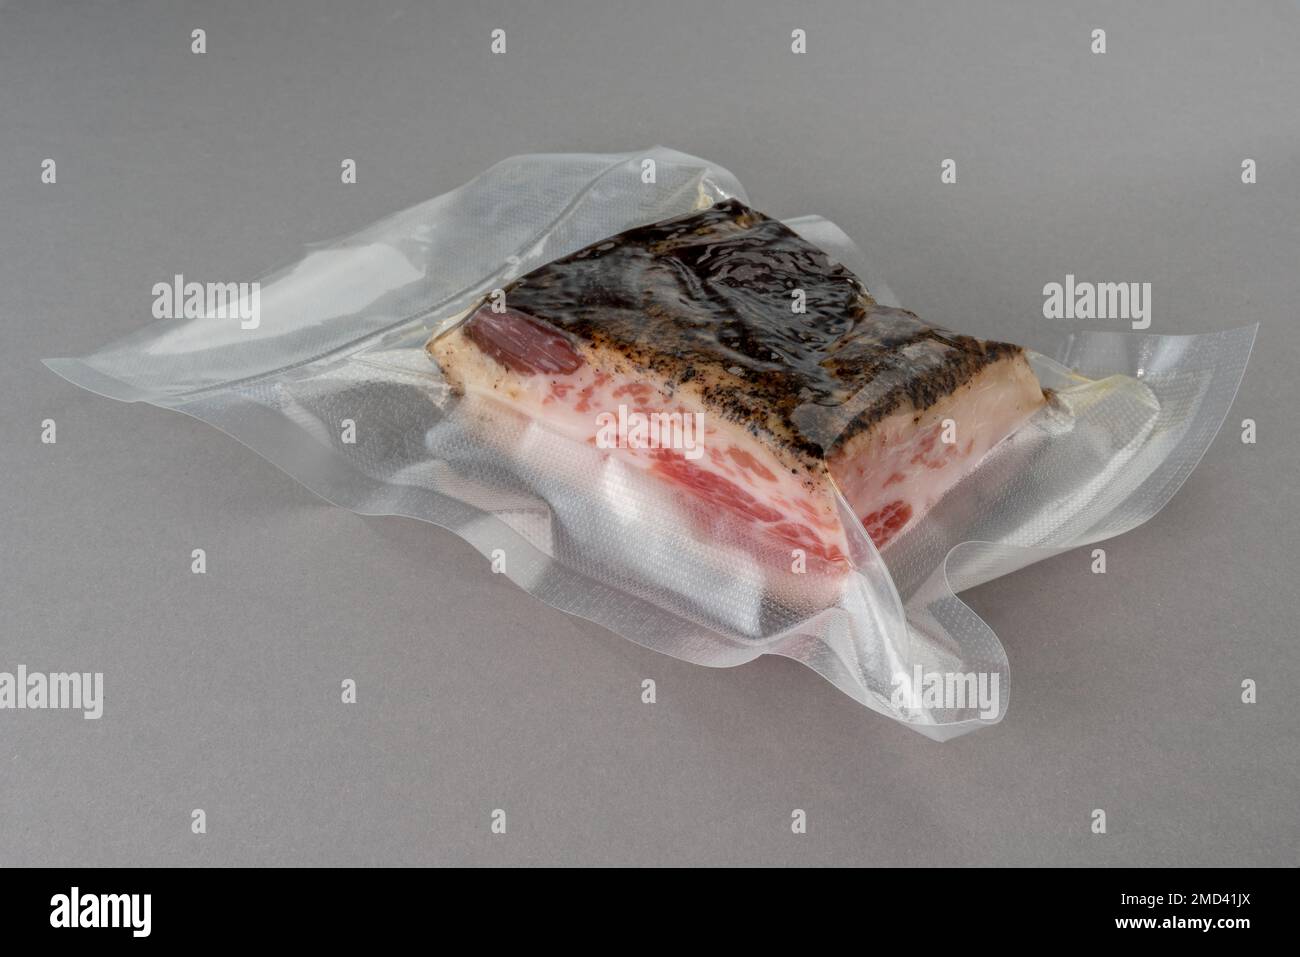 Chouette de porc Guanciale emballée sous vide pour une cuisson sous vide sur fond gris Banque D'Images